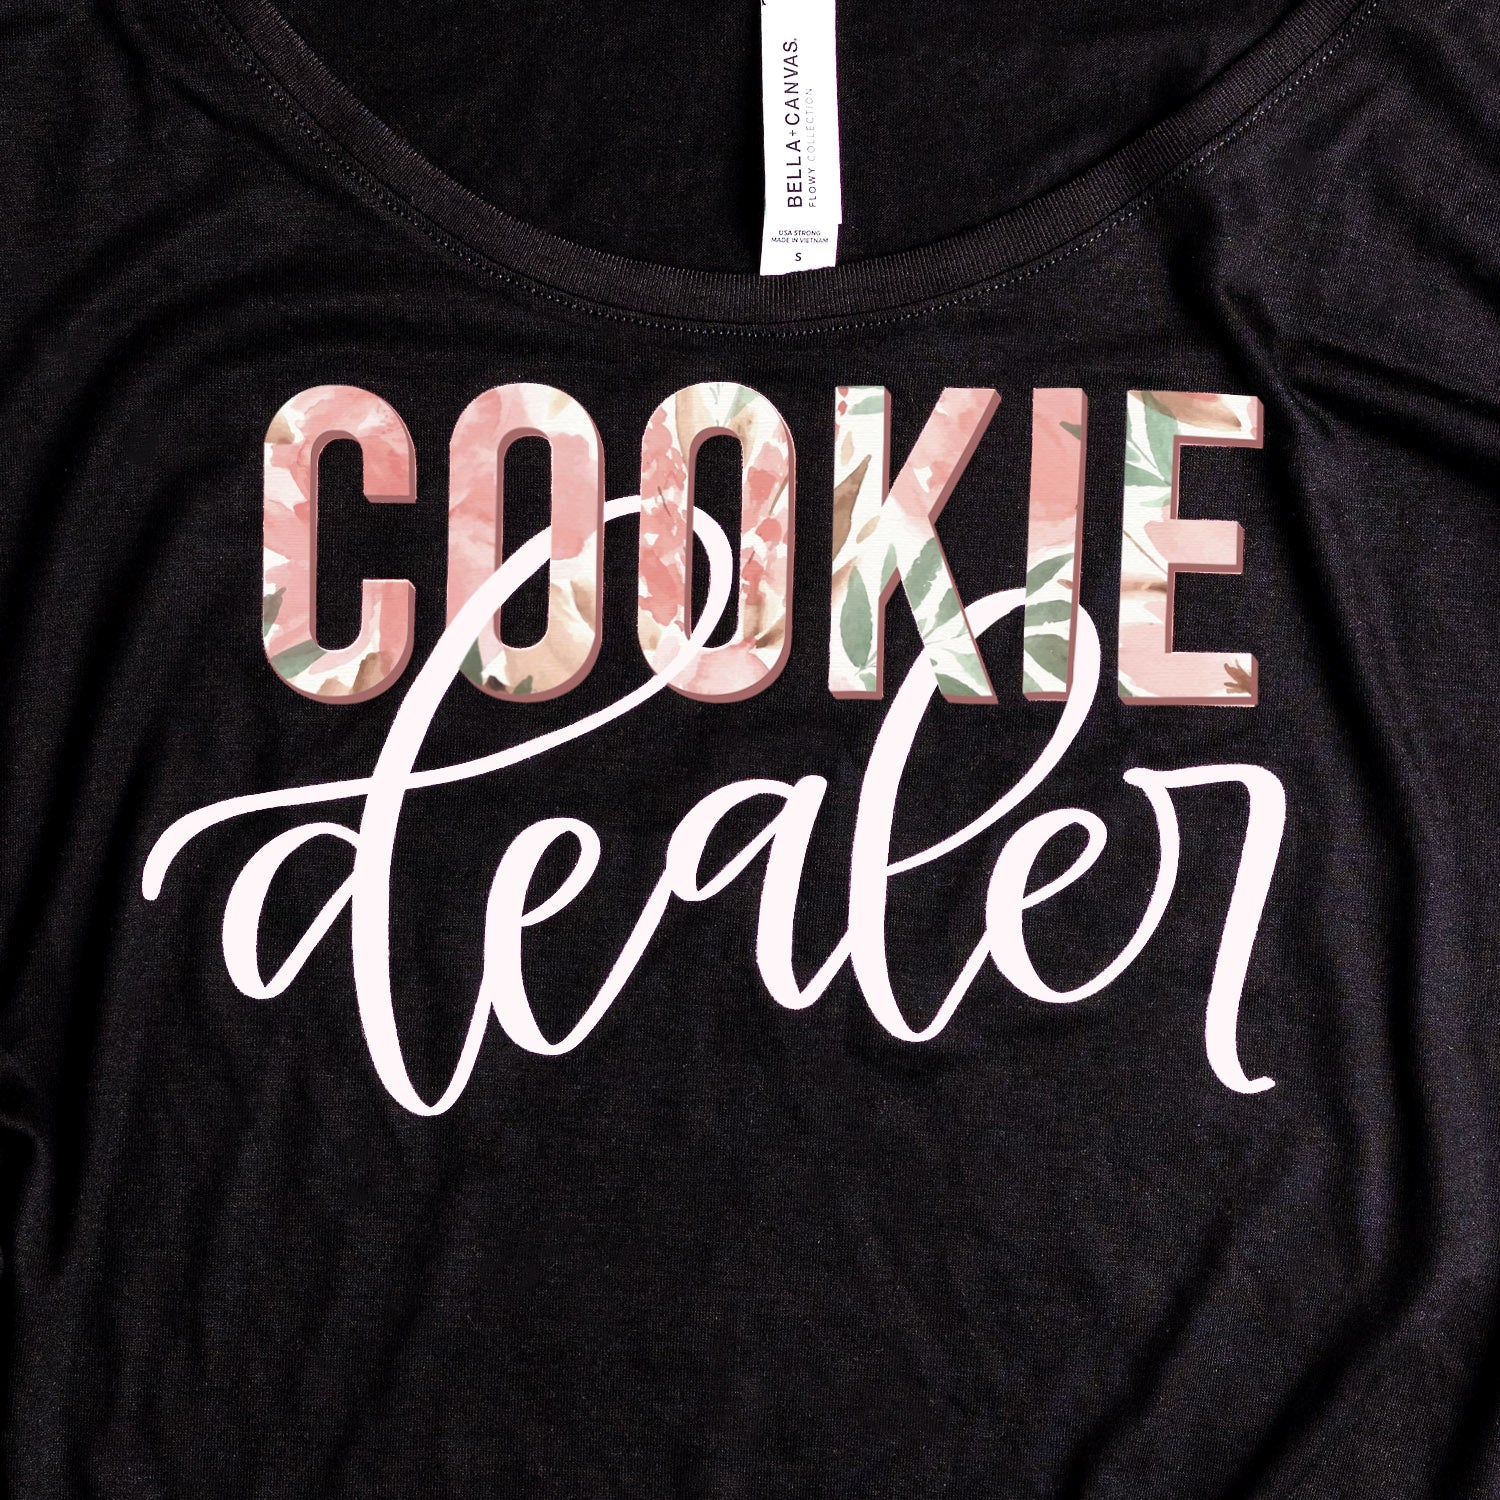 Cookie Dealer Women's Slouchy Tee